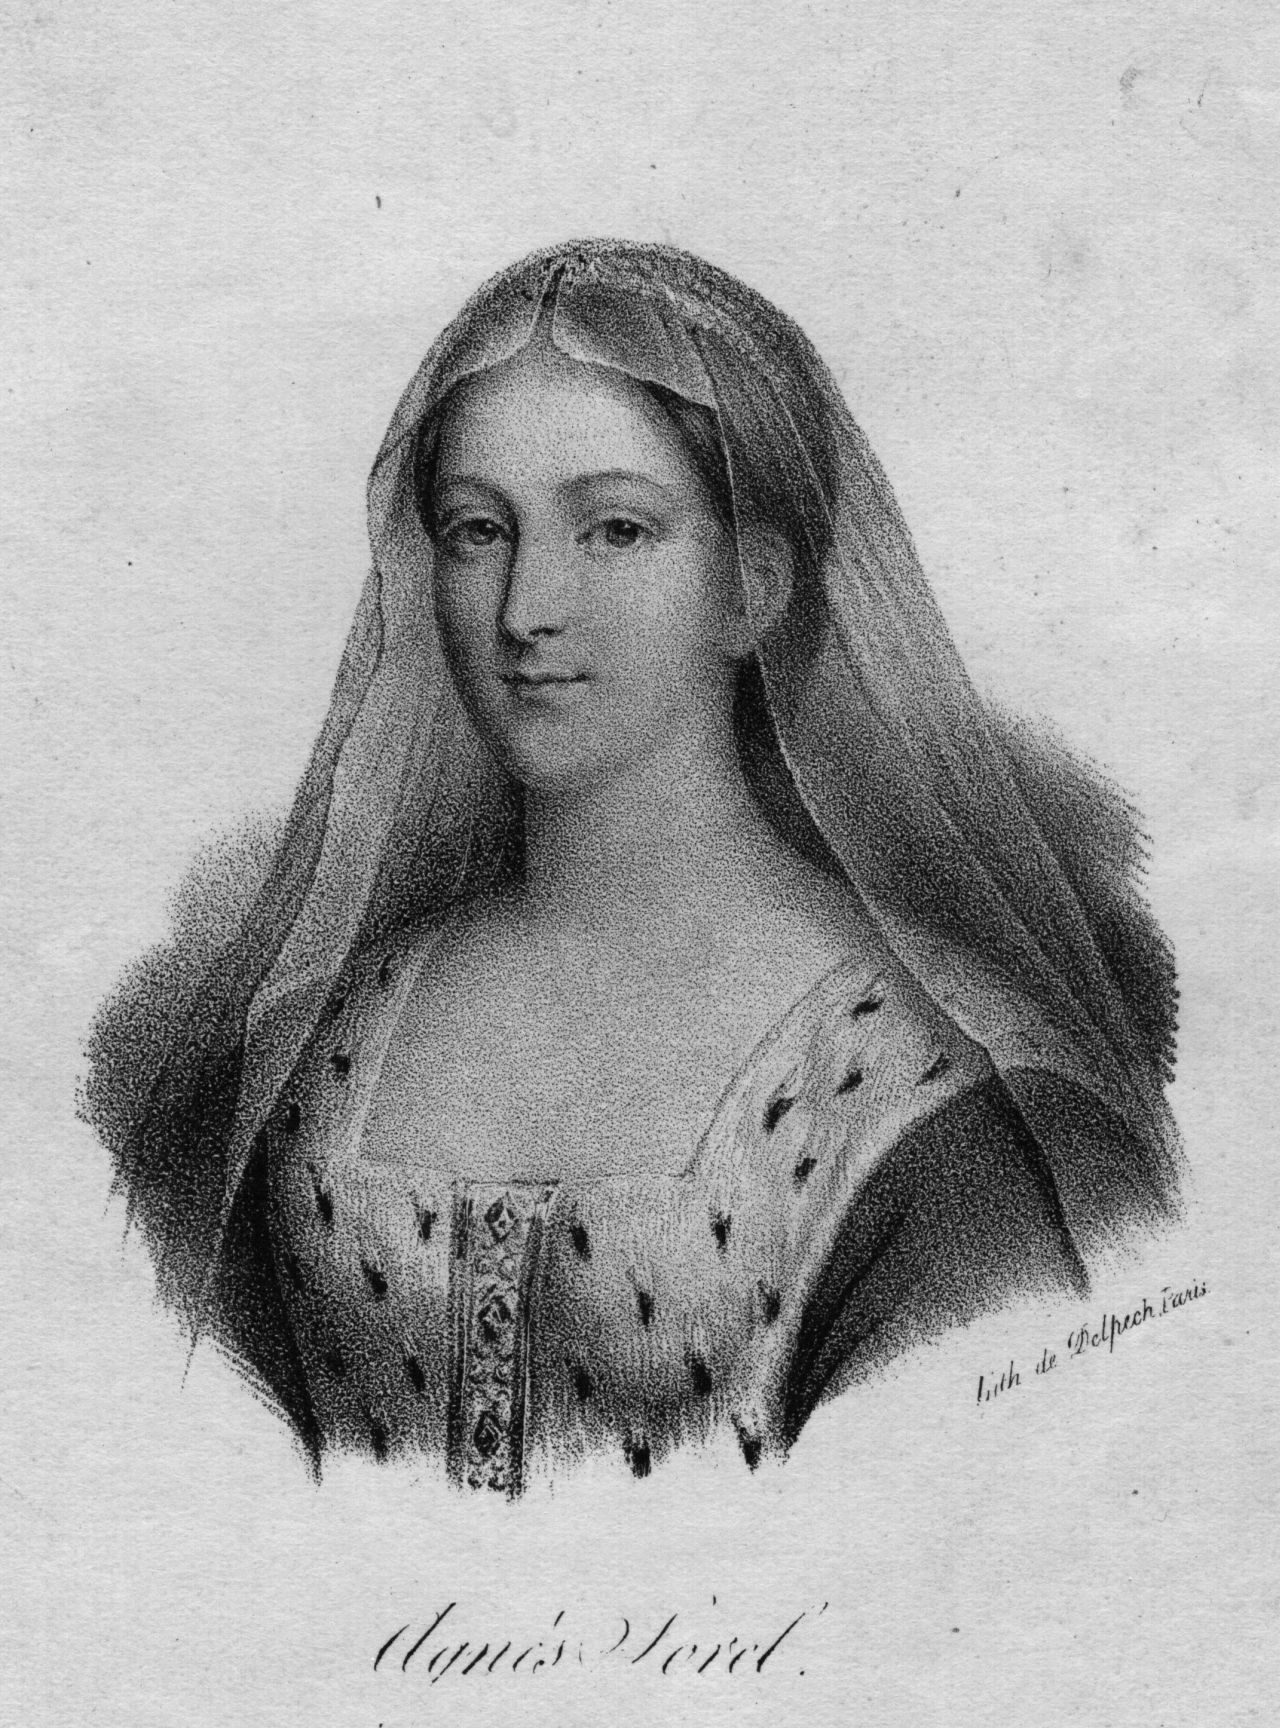 <p><strong>Агнес Сорел (1422&ndash;1450)</strong><br />
Известна още като dame de beaut&eacute; (&bdquo;дамата на красотата&ldquo;), Агнес Сорел е била любимата любовница на френския крал Шарл VII. Считана за първата официално призната кралска любовница на френски крал, тя е била обект на няколко картини и произведения на изкуството.</p>